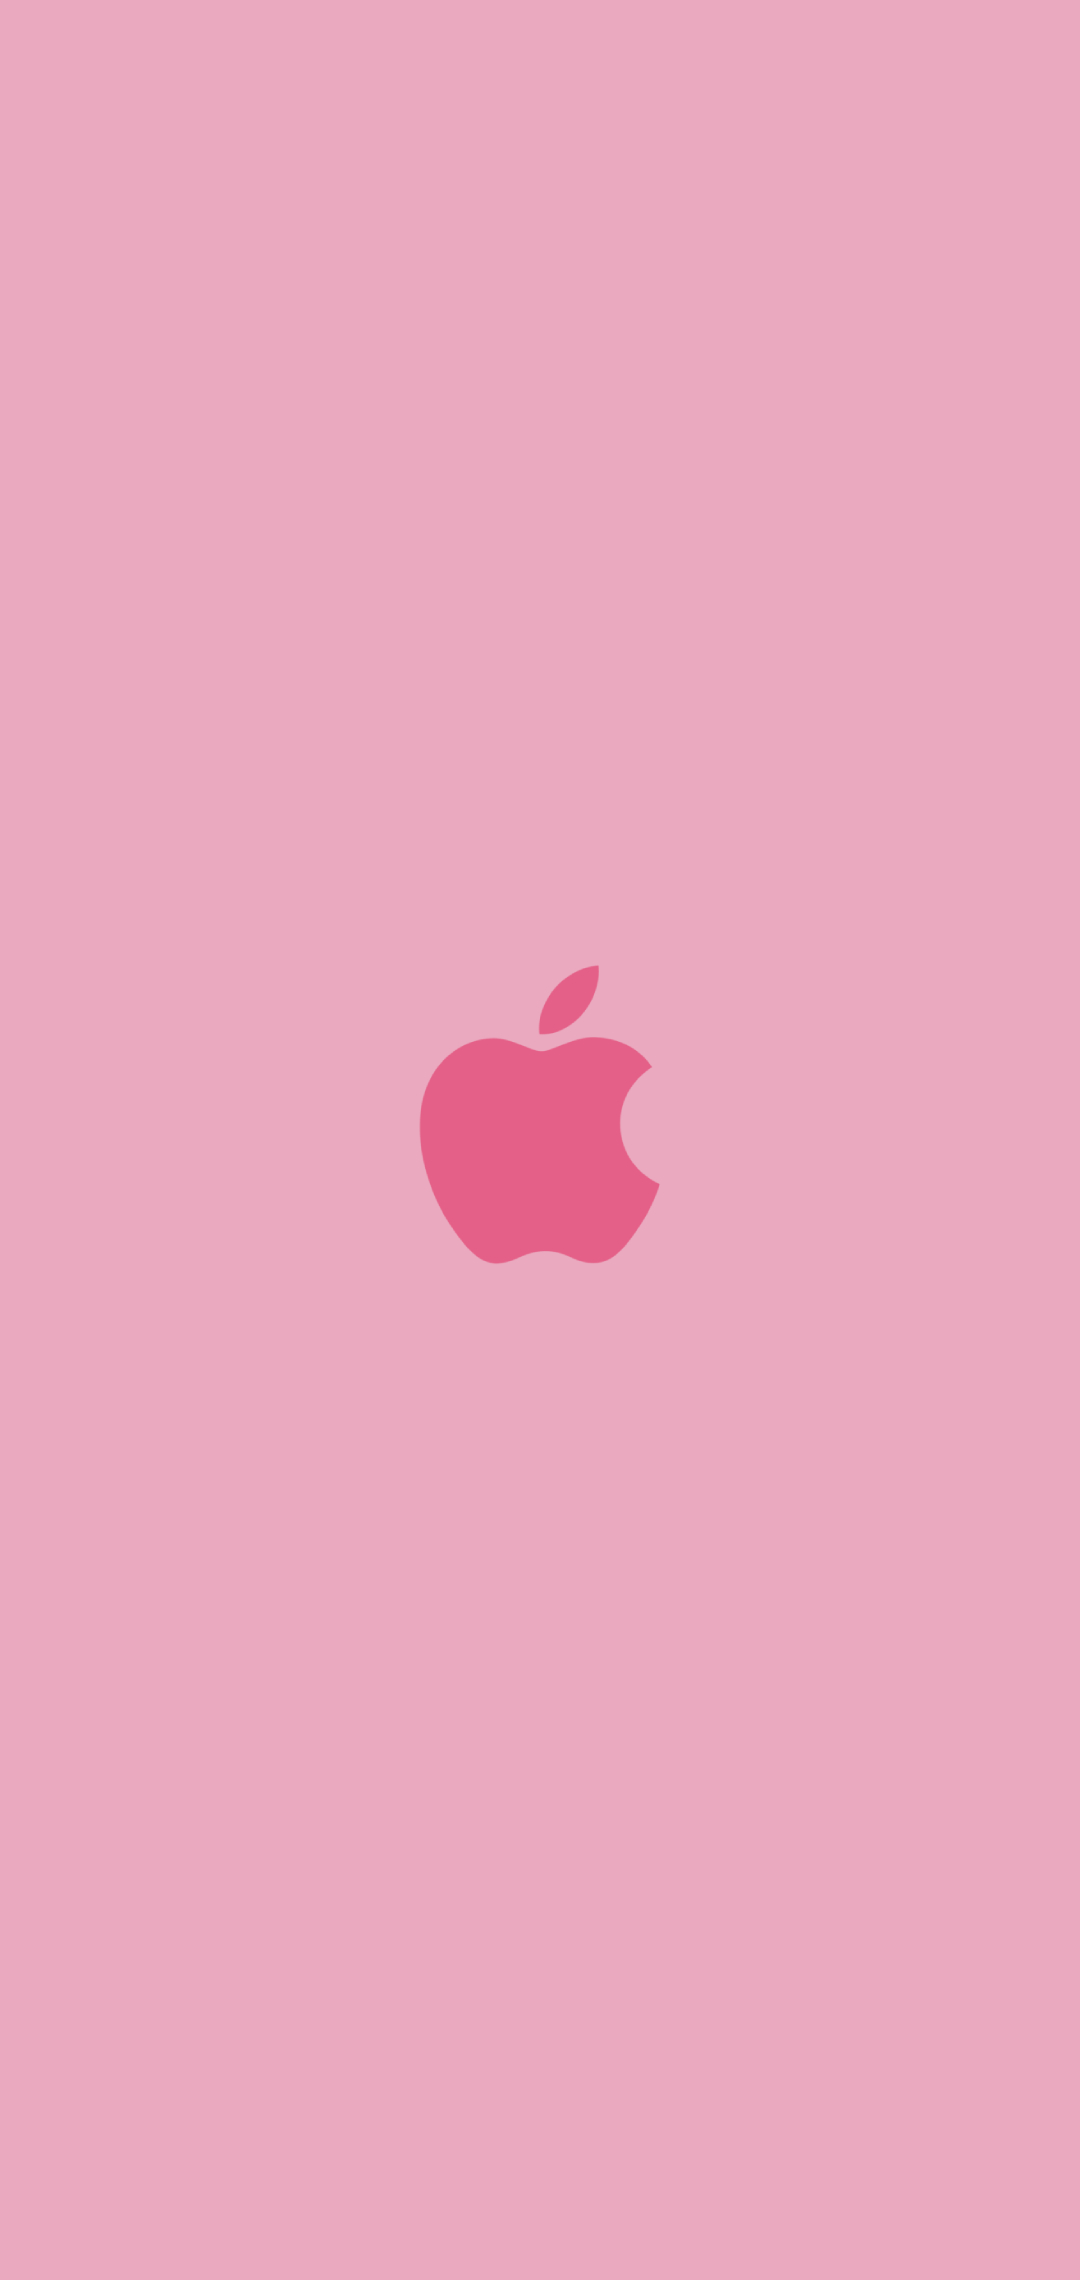 可愛いピンクのapple ロゴ Aquos Sense4 壁紙 待ち受け Sumaran